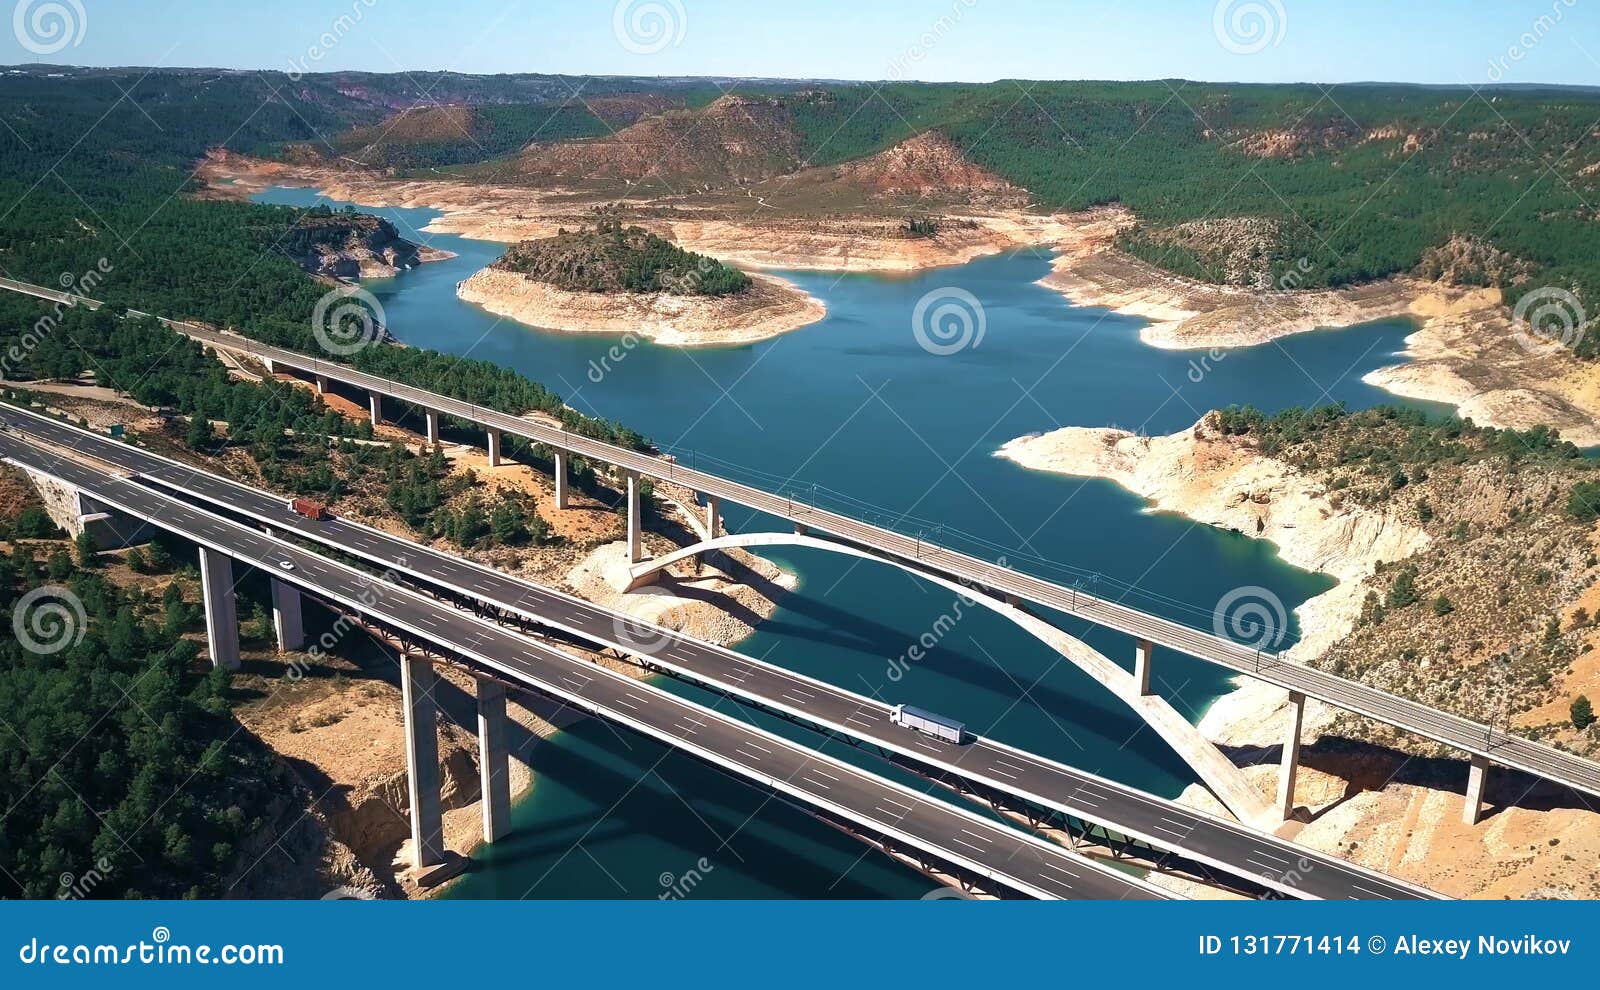 aerial view of viaducto de contreras, expressway bridge in spain